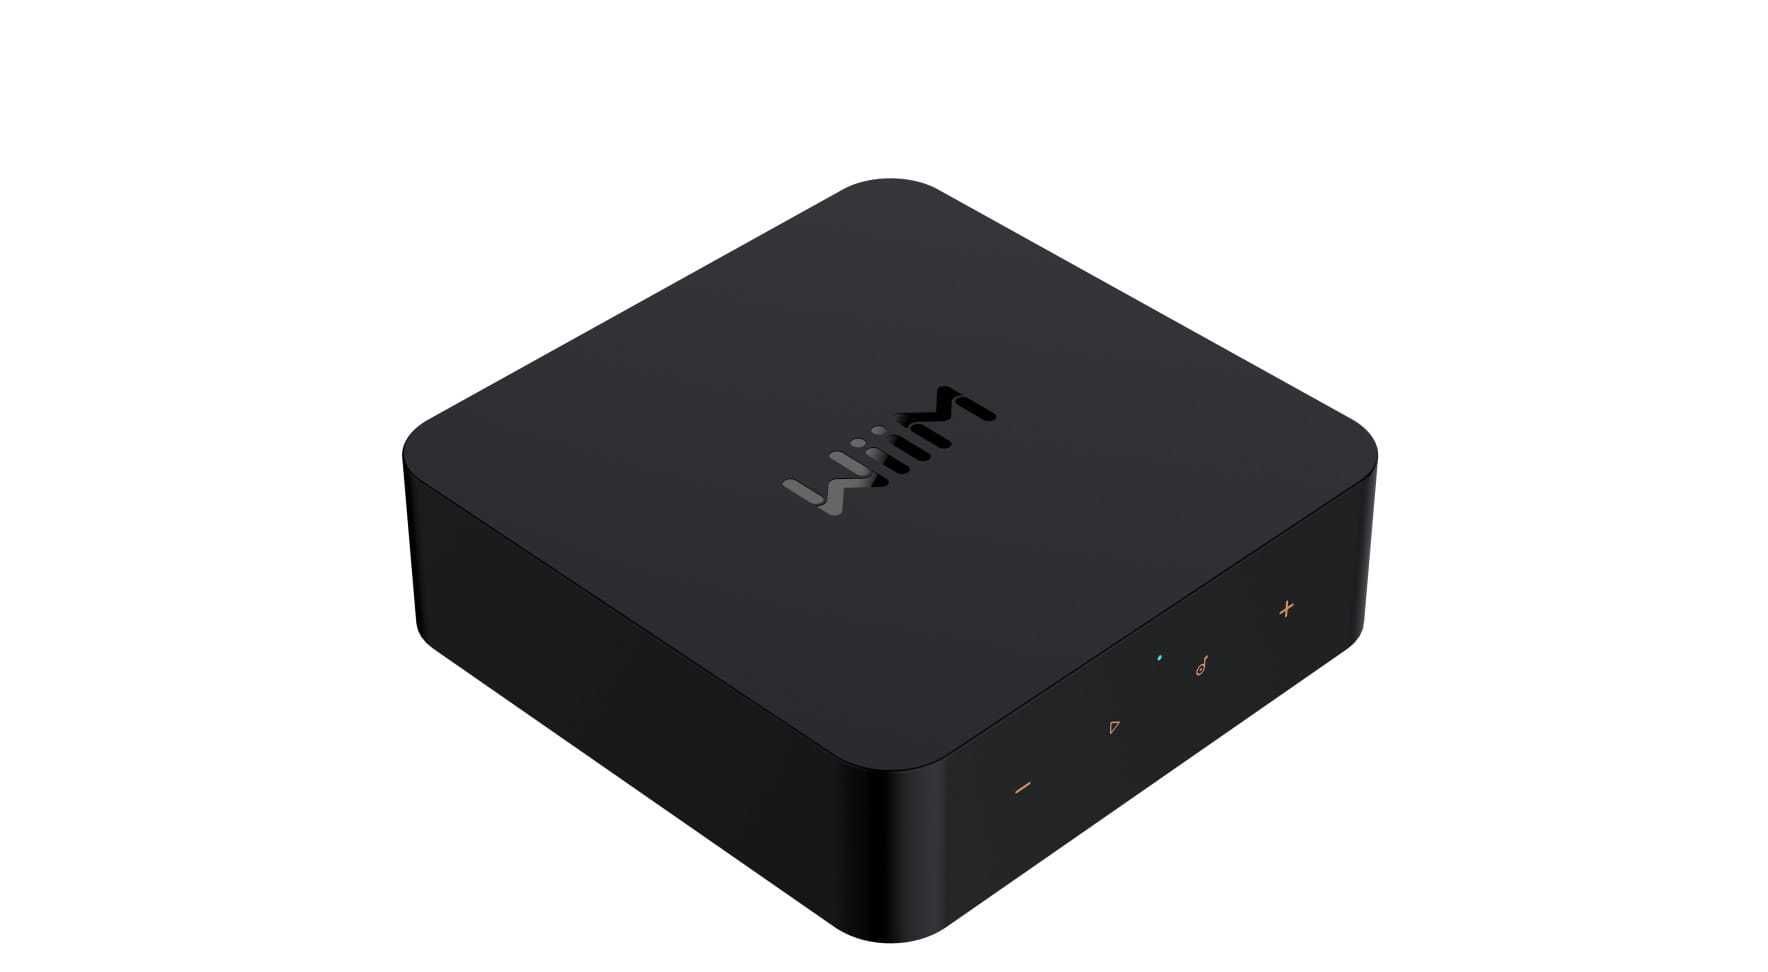 Odtwarzacz sieciowy WiiM Pro Plus czarny WiFi Bluetooth Spotify Tidal